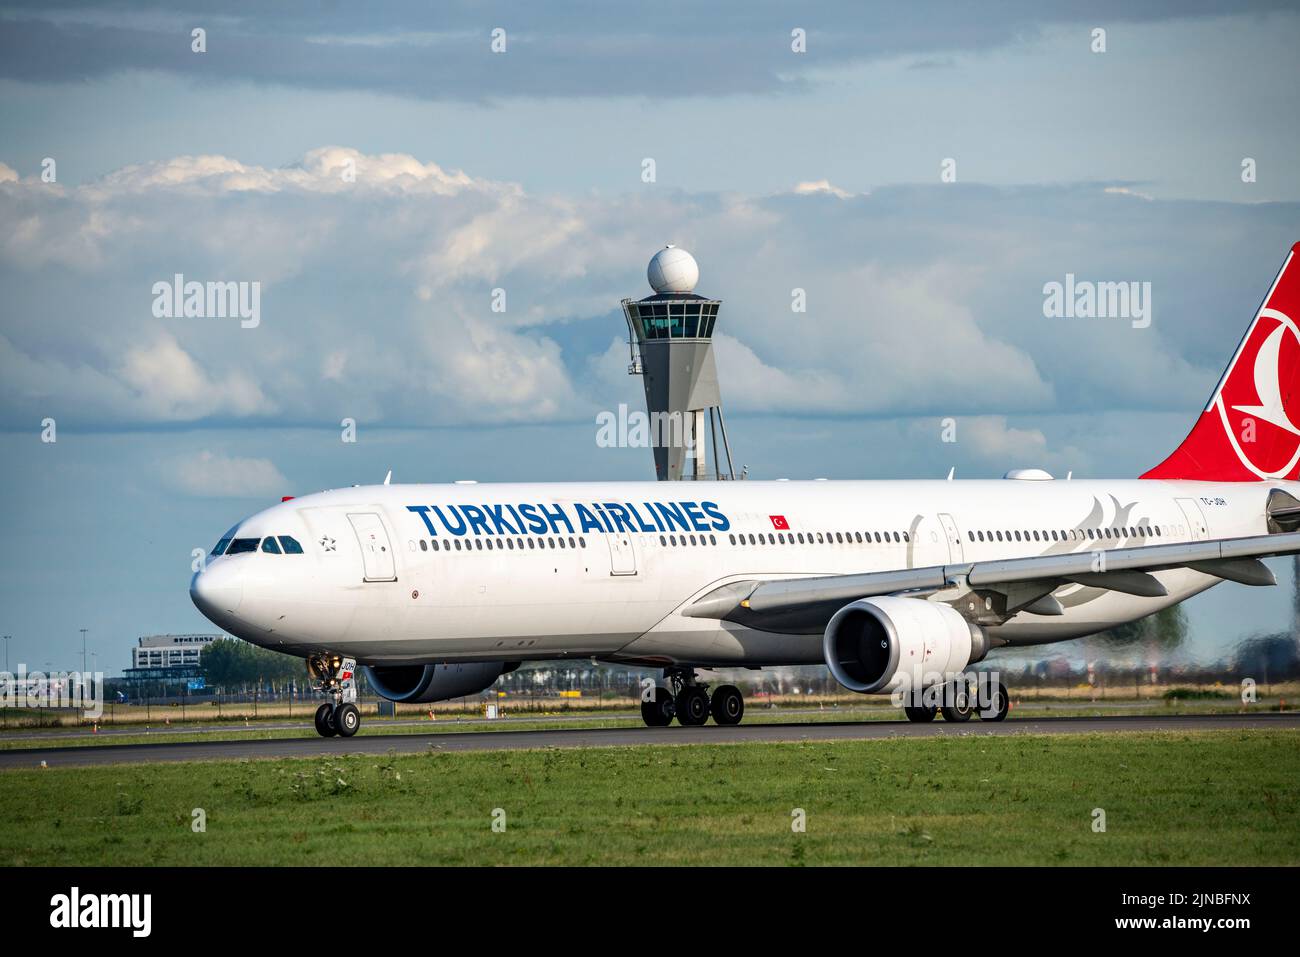 Amsterdam Shiphol Airport, Polderbaan, una de las 6 pistas, torre de control de tráfico aéreo, TC-JOH Turkish Airlines Airbus A330-300, despegando, Foto de stock